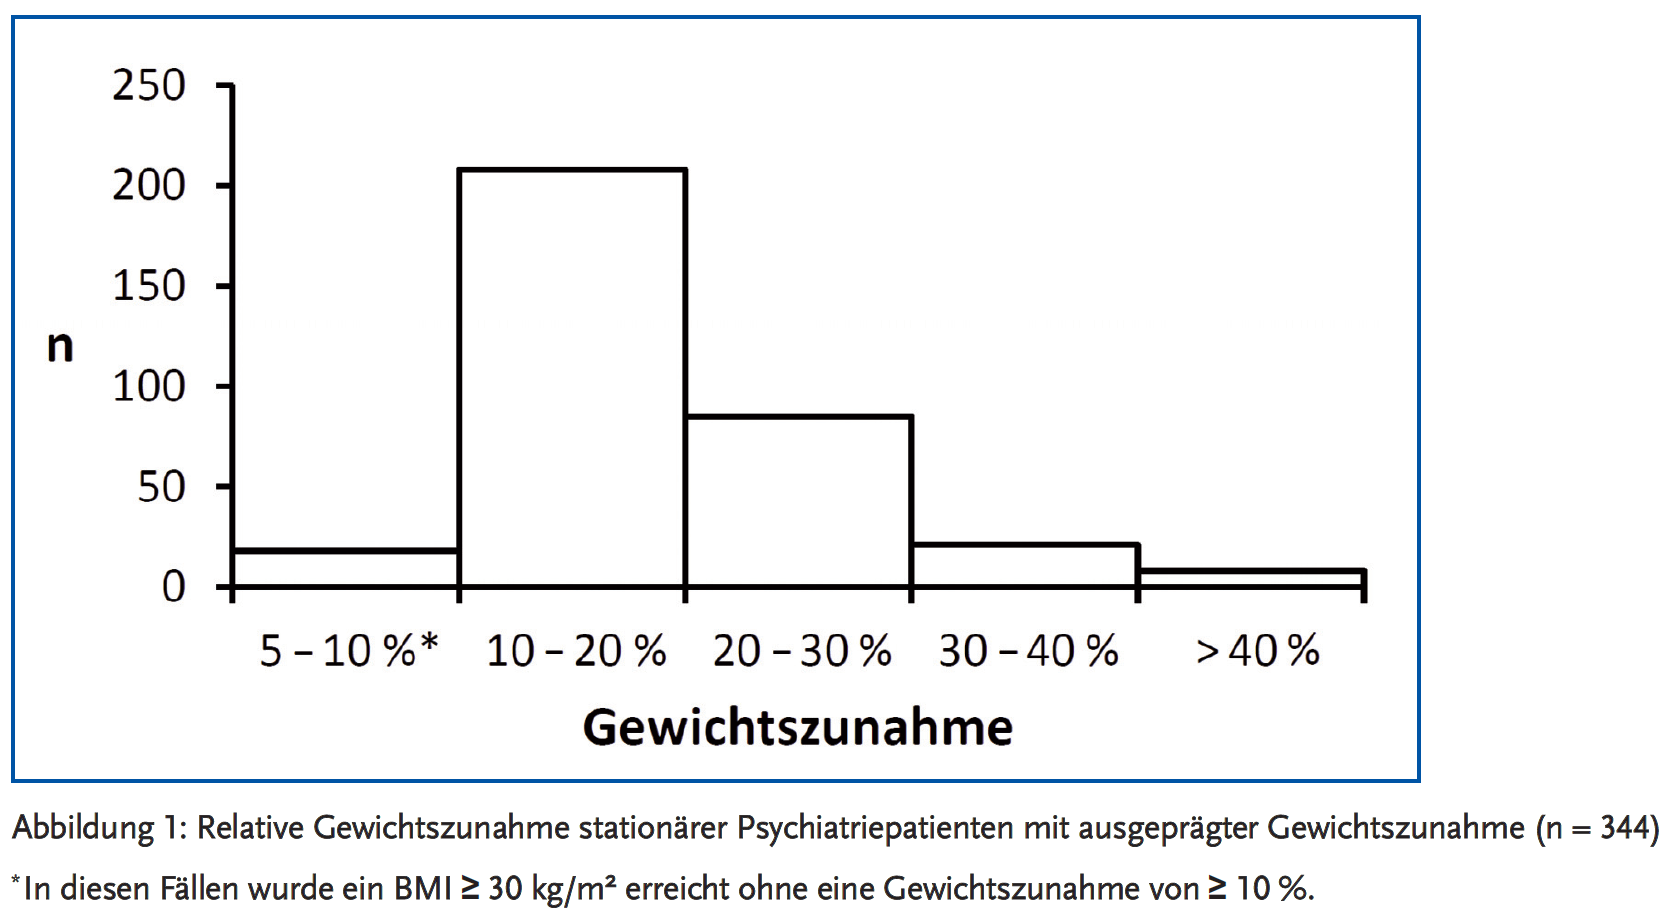 Abbildung 1: Relative Gewichtszunahme stationärer Psychiatriepatienten mit ausgeprägter Gewichtszunahme (n = 344).